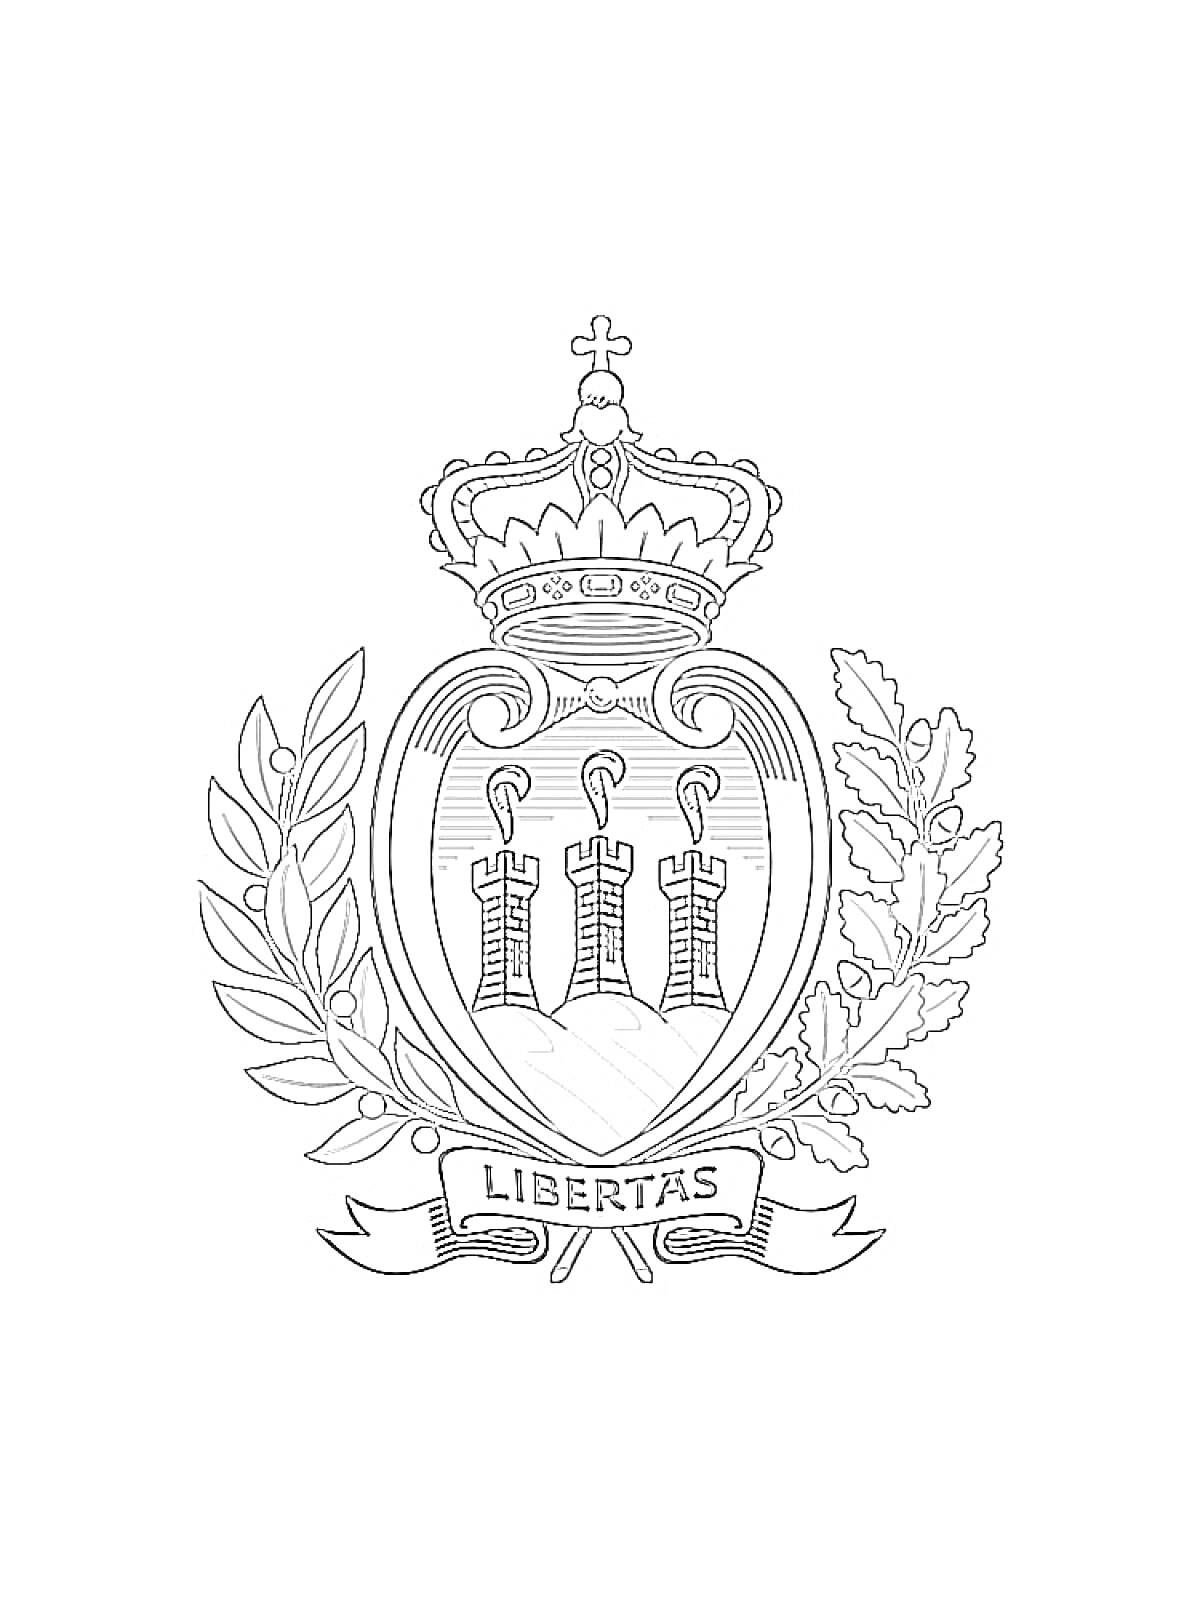 Герб с короной, тремя башнями, лавровой и дубовой ветвями, лентой с надписью 